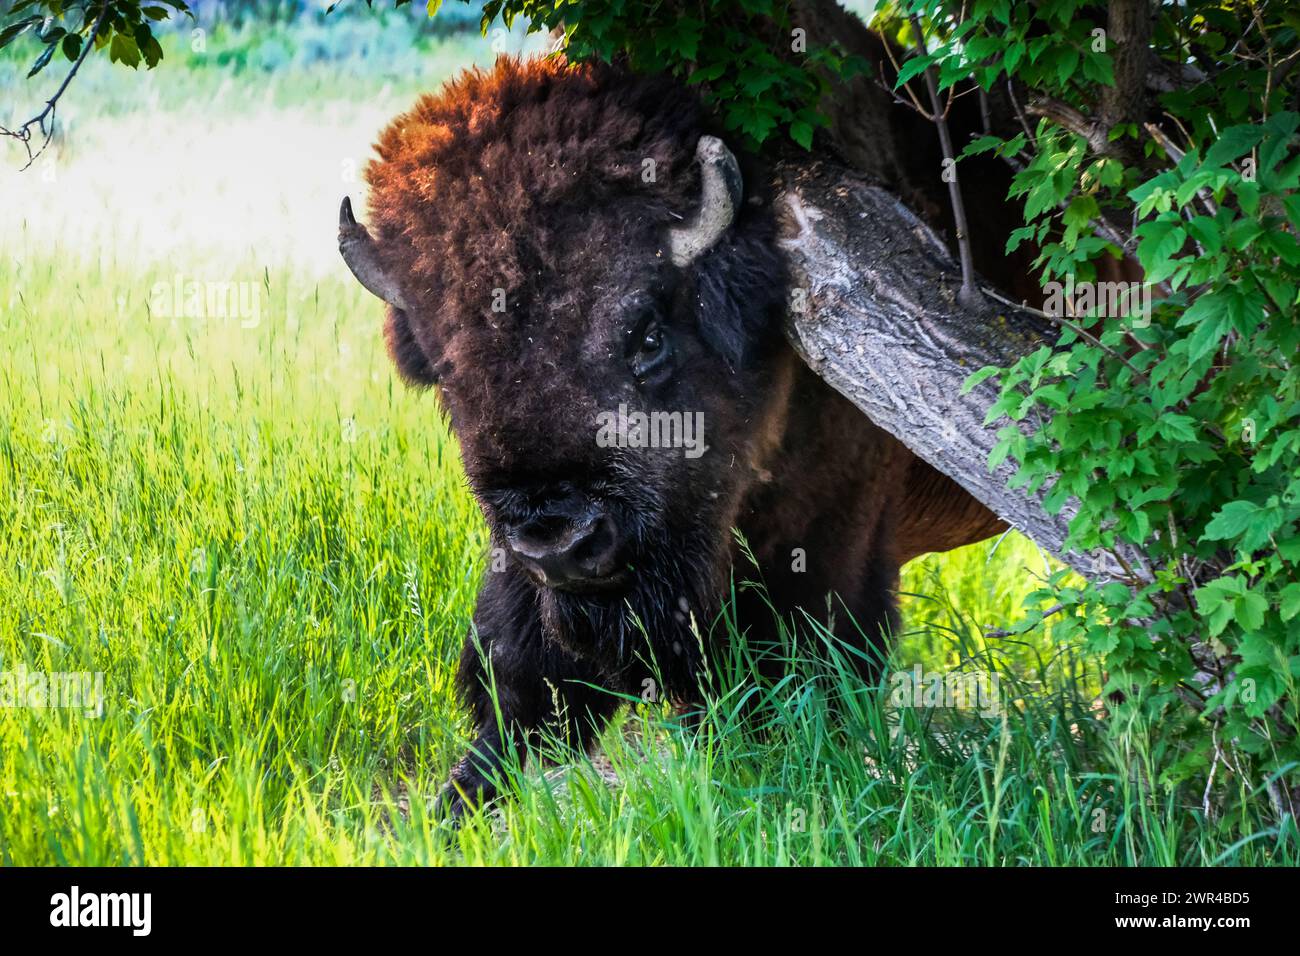 Buffalo (bison d'Amérique) frotte contre un arbre dans le parc national Theodore Roosevelt dans le Dakota du Nord, États-Unis. Près de Medora, Dakota du Nord. Banque D'Images